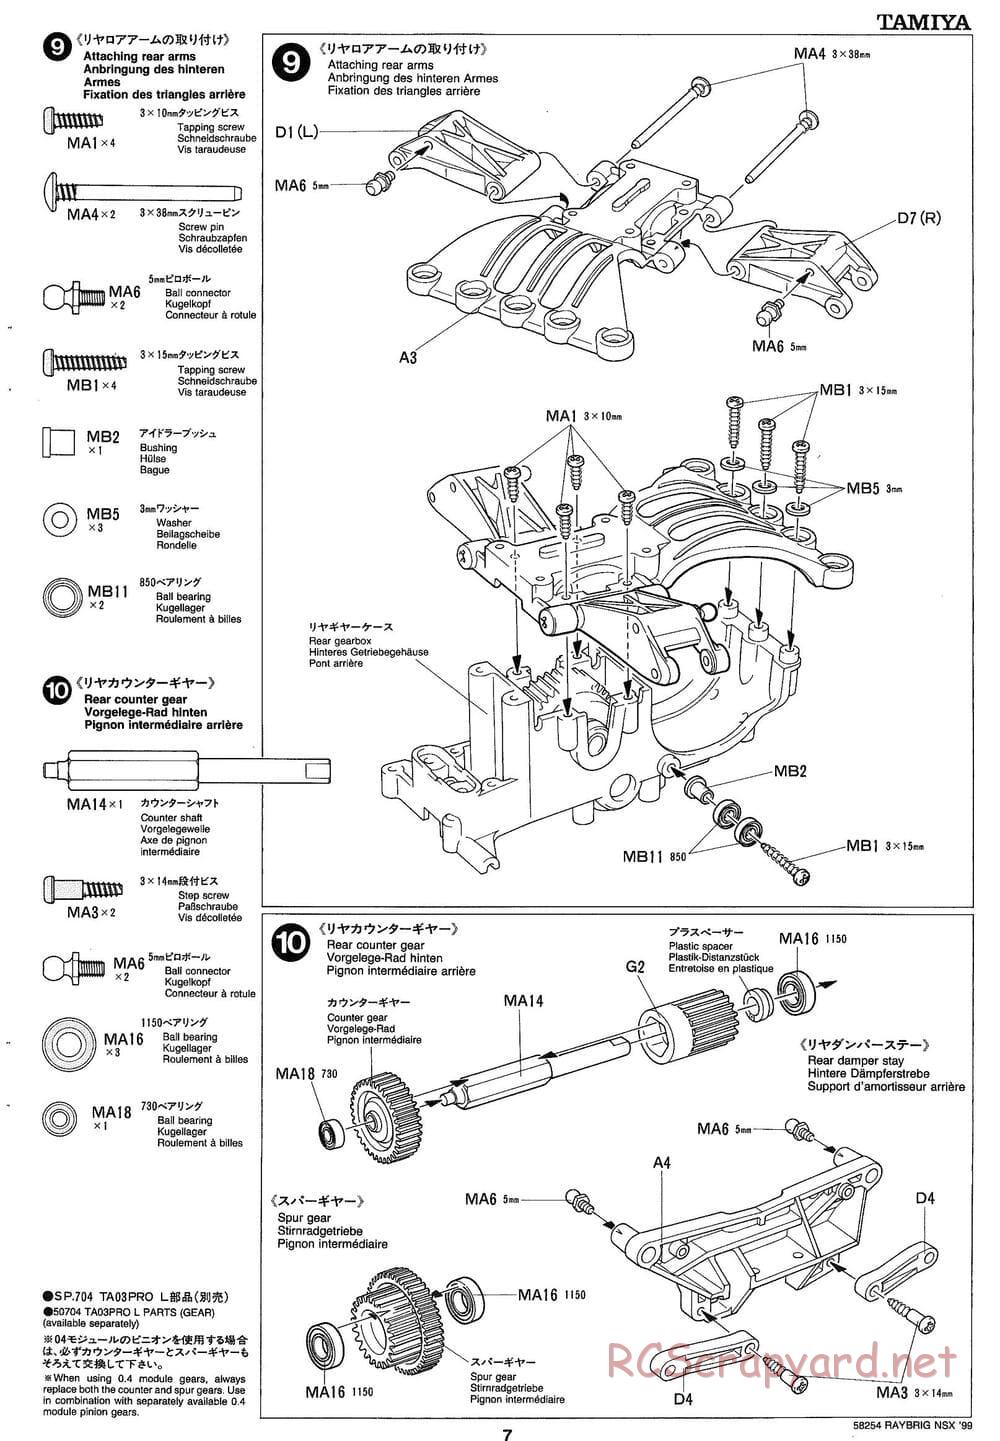 Tamiya - Raybrig NSX 99 - TA-03R Chassis - Manual - Page 7